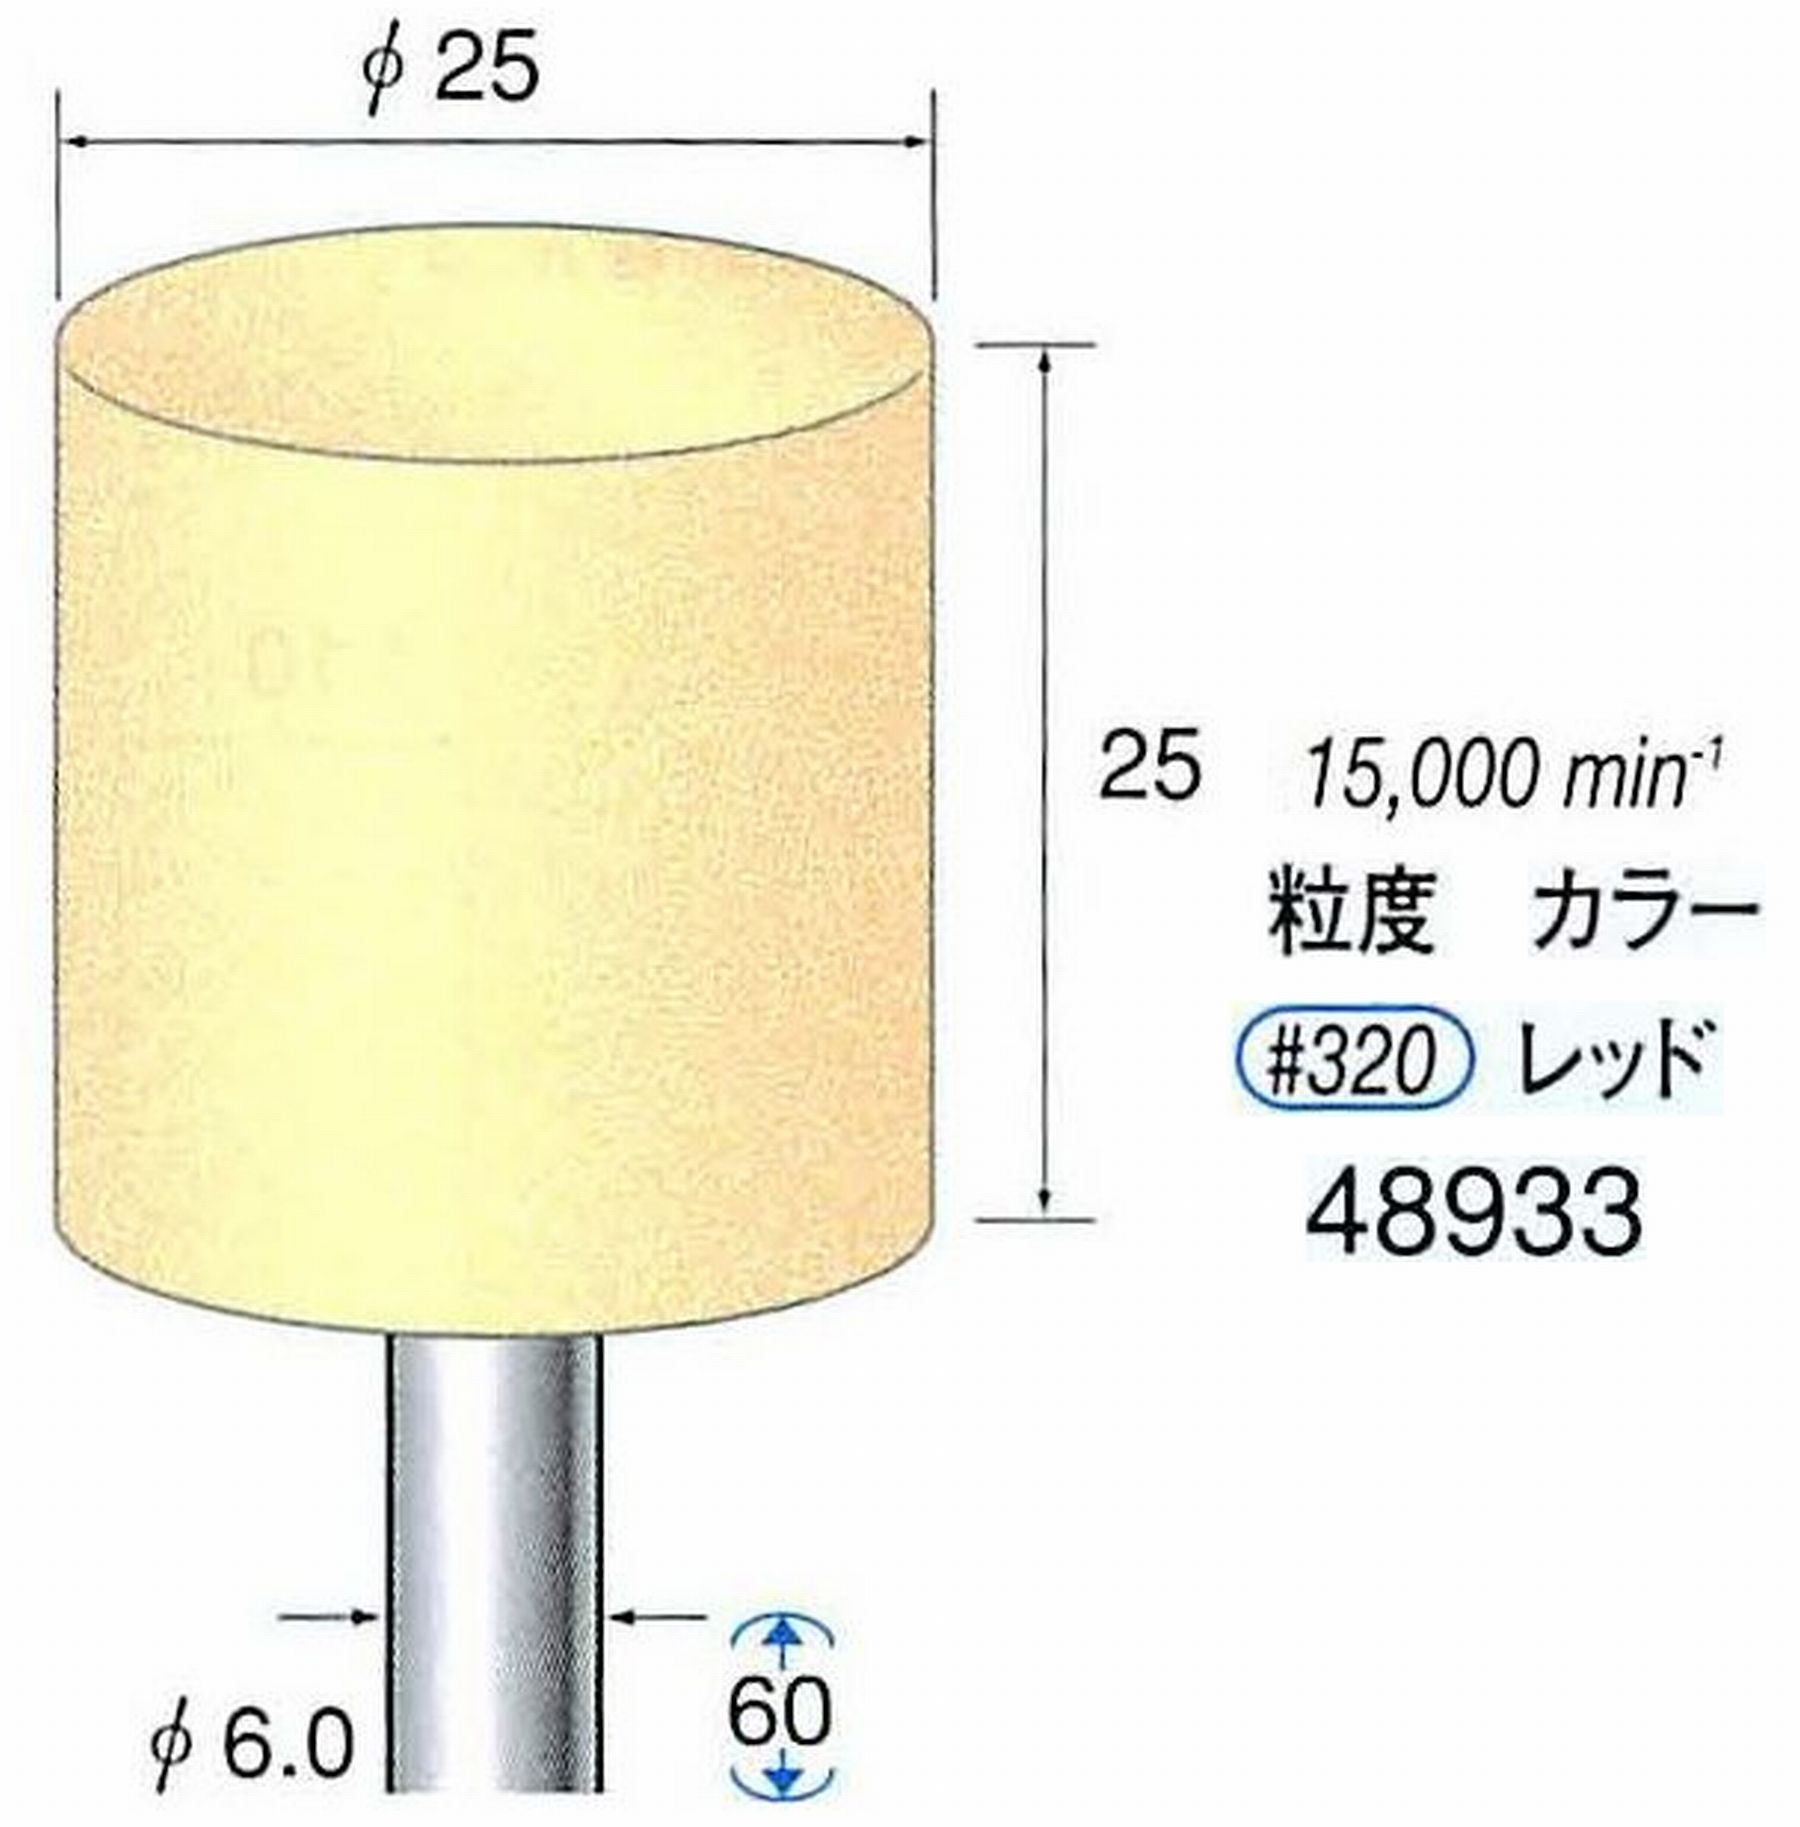 ナカニシ/NAKANISHI ポリッシュサンダー 軸径(シャンク)φ6.0mm 48933